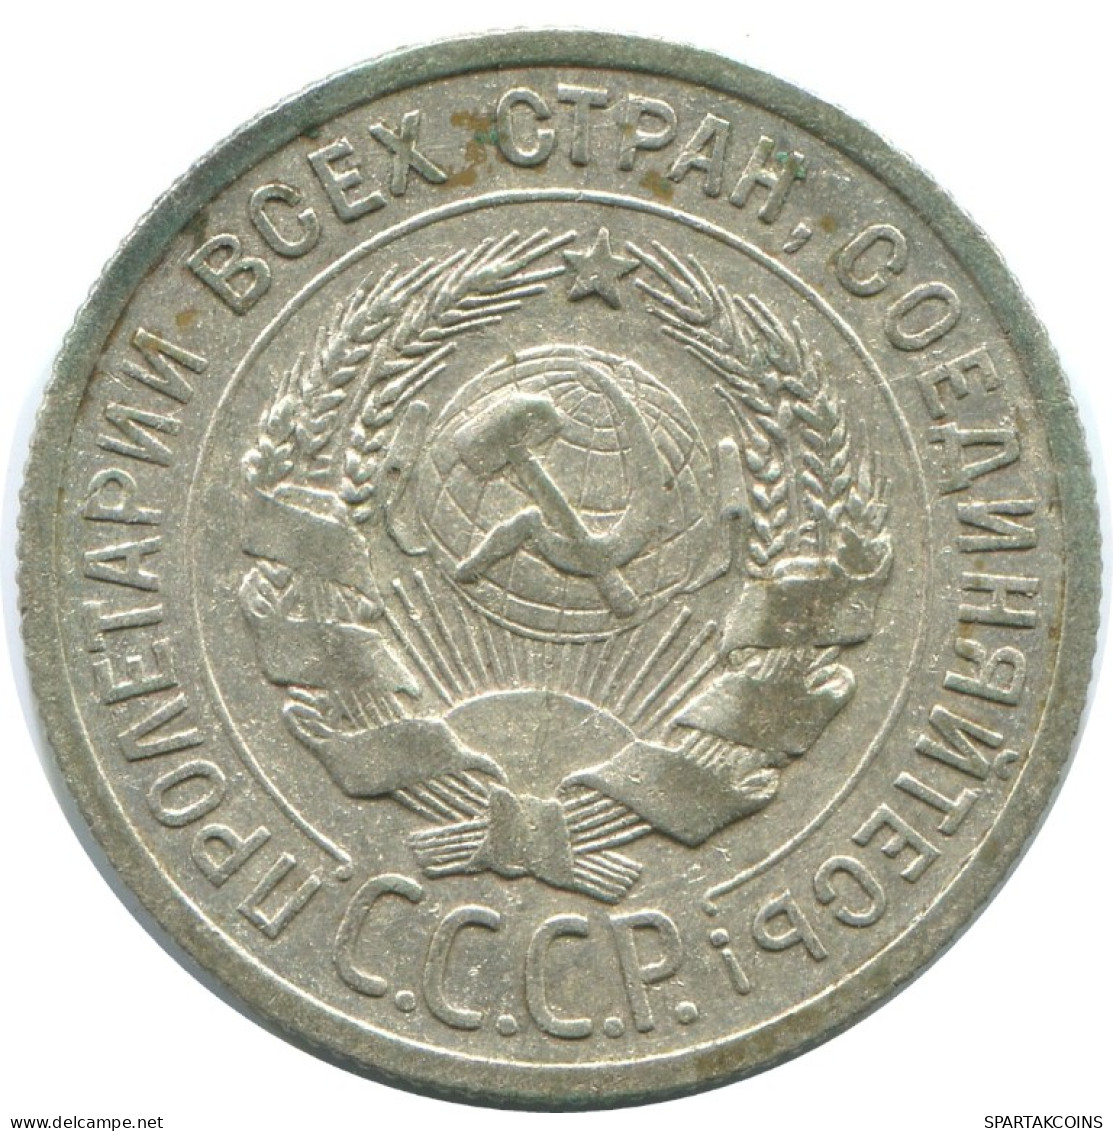 20 KOPEKS 1925 RUSSLAND RUSSIA USSR SILBER Münze HIGH GRADE #AF309.4.D.A - Russland